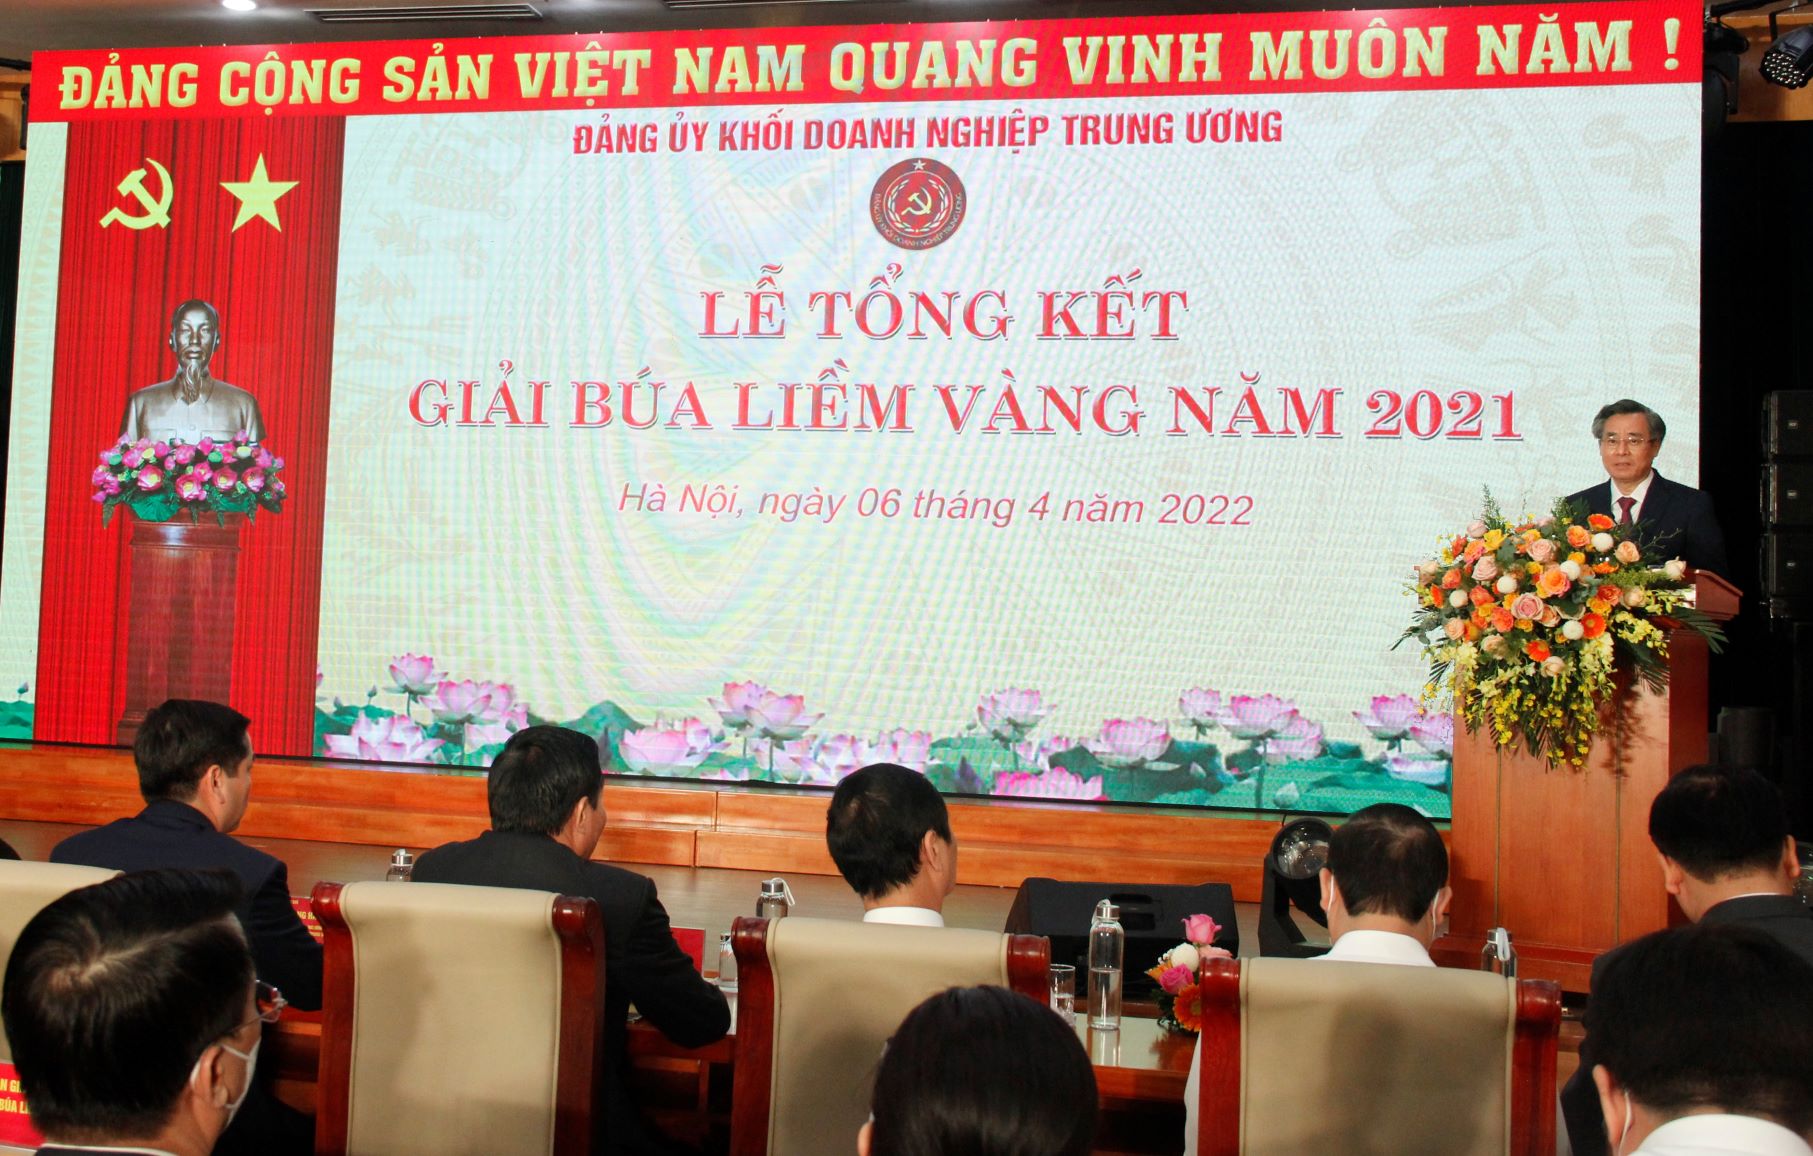 Đồng chí Nguyễn Quang Dương, Ủy viên BCH Trung ương Đảng, Phó trưởng Ban Tổ chức Trung ương phát biểu tại buổi Lễ.